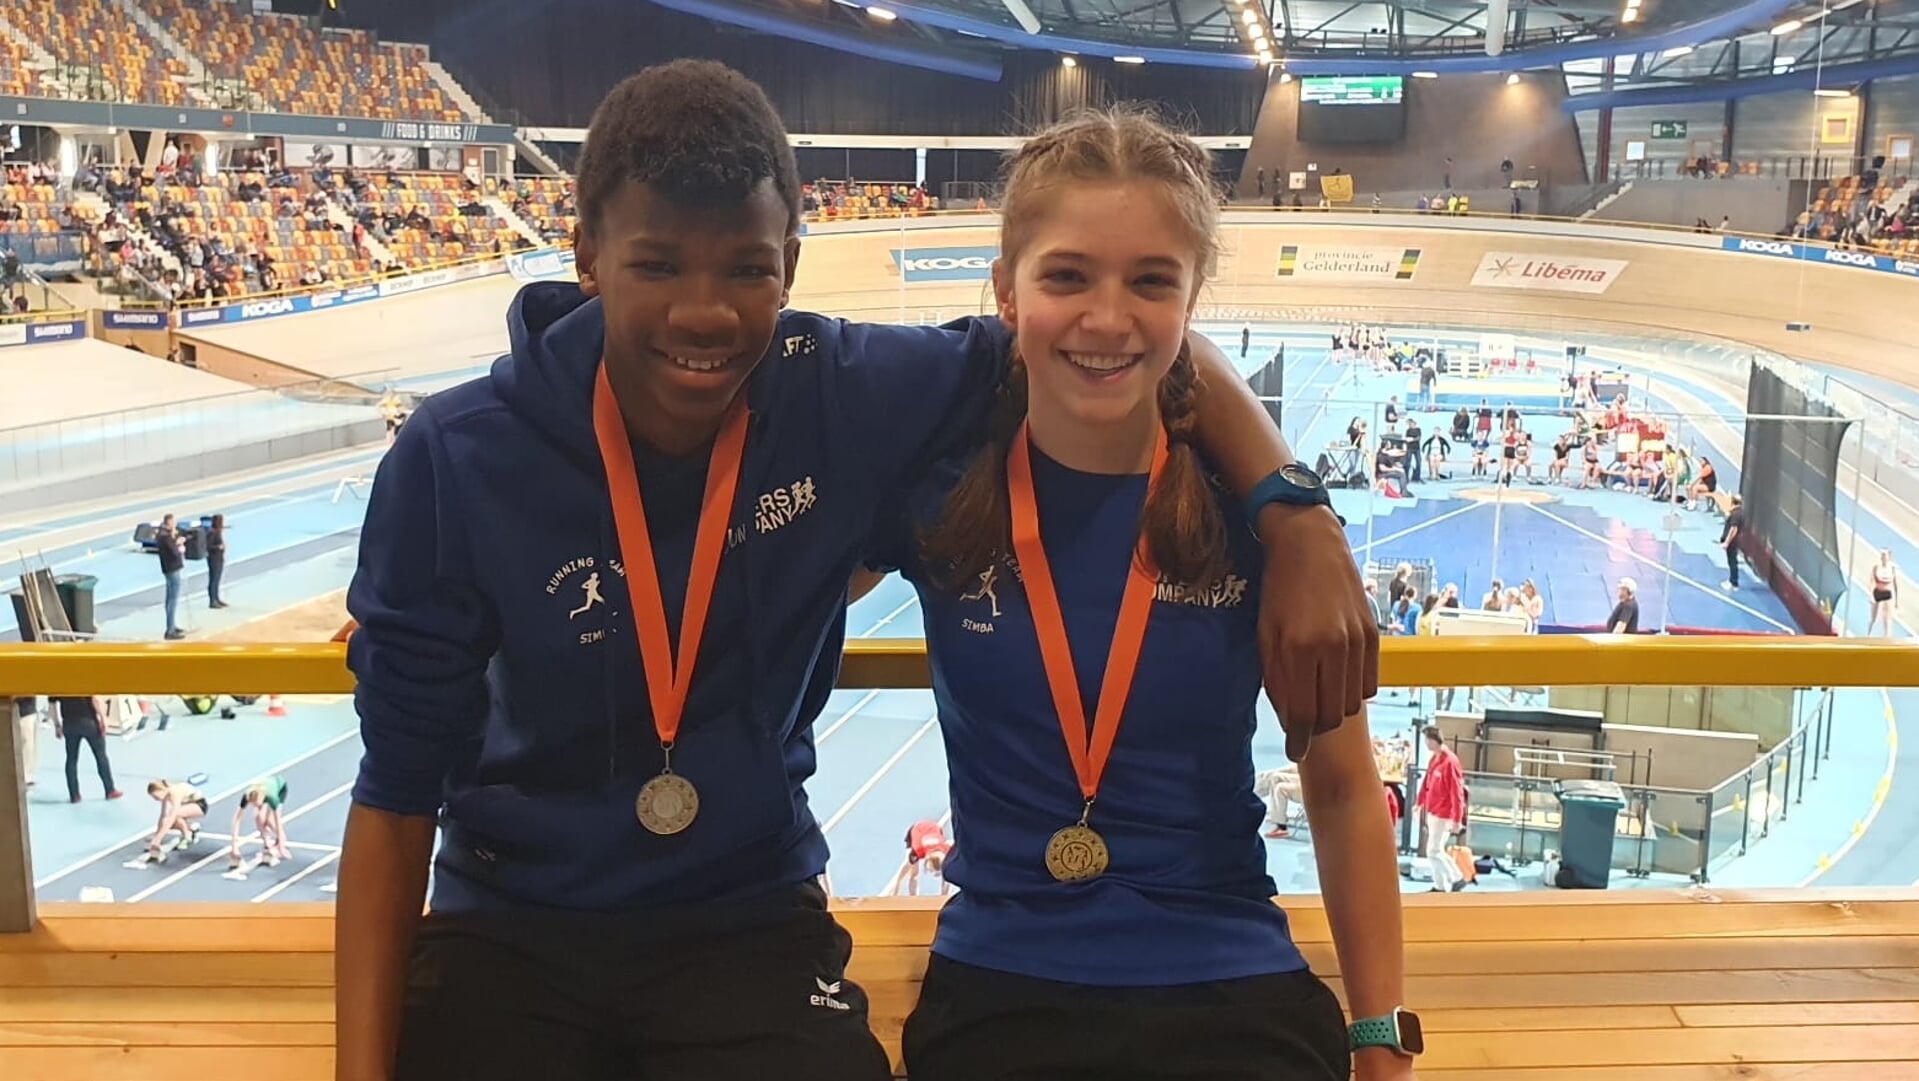 Elihle en Kaate met hun medailles.